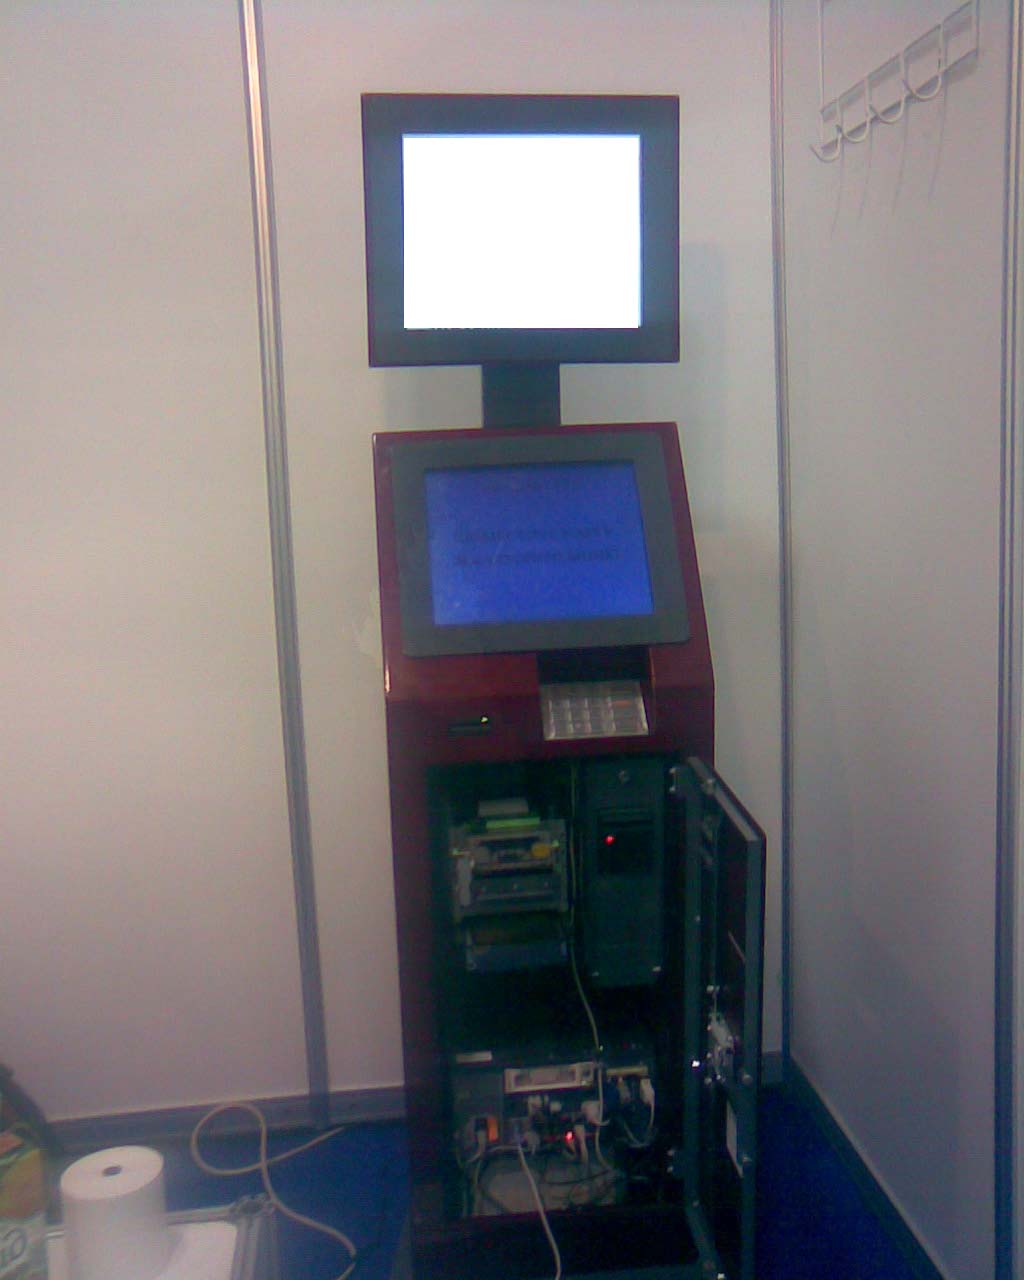 Мультимедийный универсальный плеер для верхнего экрана терминала попол